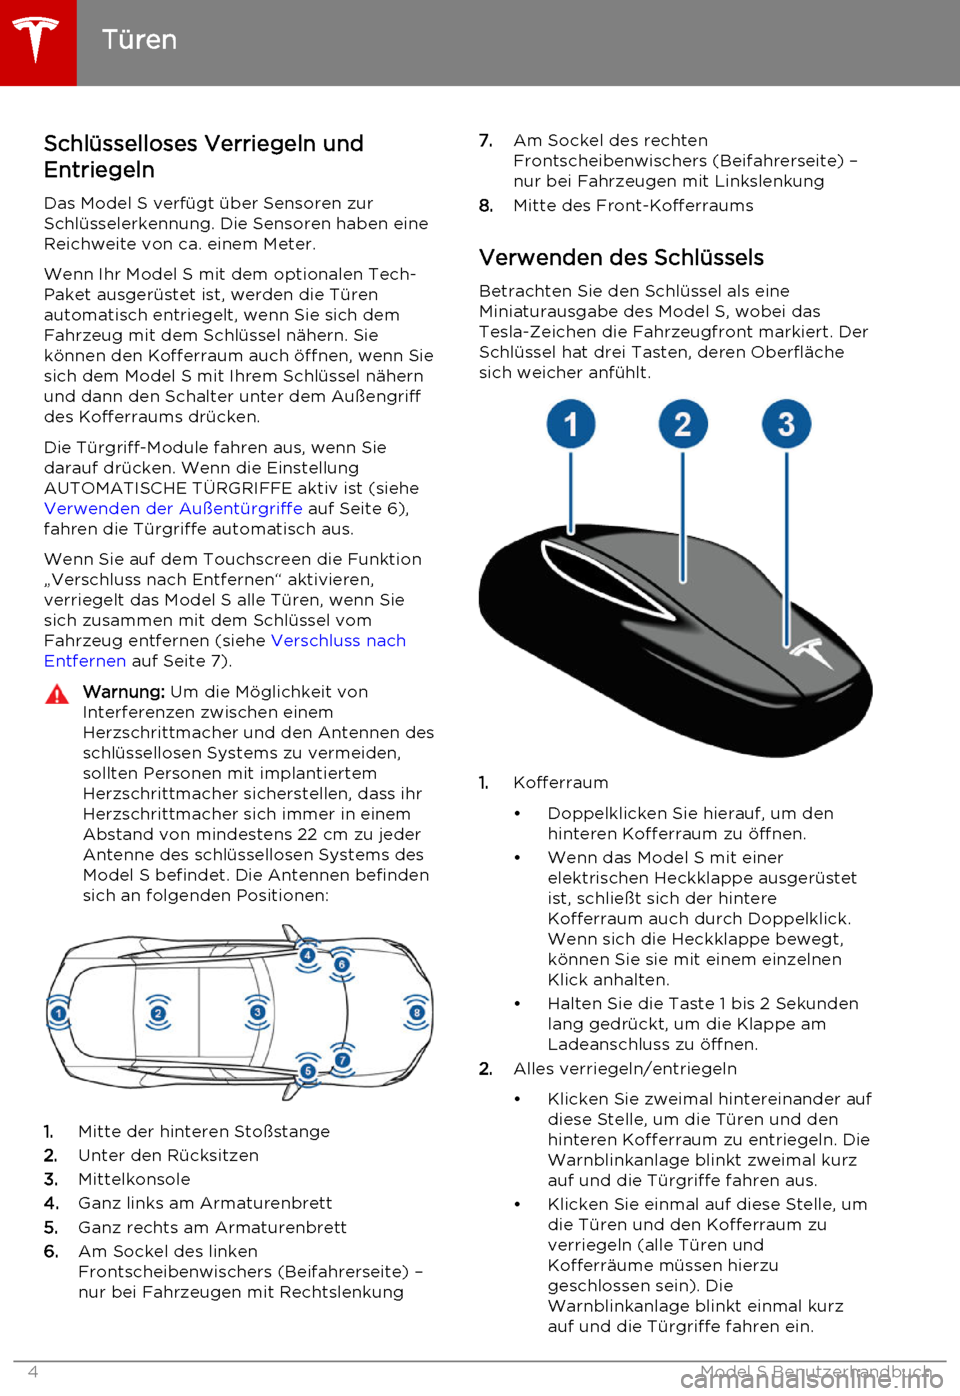 TESLA MODEL S 2015  Betriebsanleitung (in German) Schlüsselloses Verriegeln und
Entriegeln
Das Model S verfügt über Sensoren zur
Schlüsselerkennung. Die Sensoren haben eine
Reichweite von ca. einem Meter.
Wenn Ihr Model S mit dem optionalen Tech-